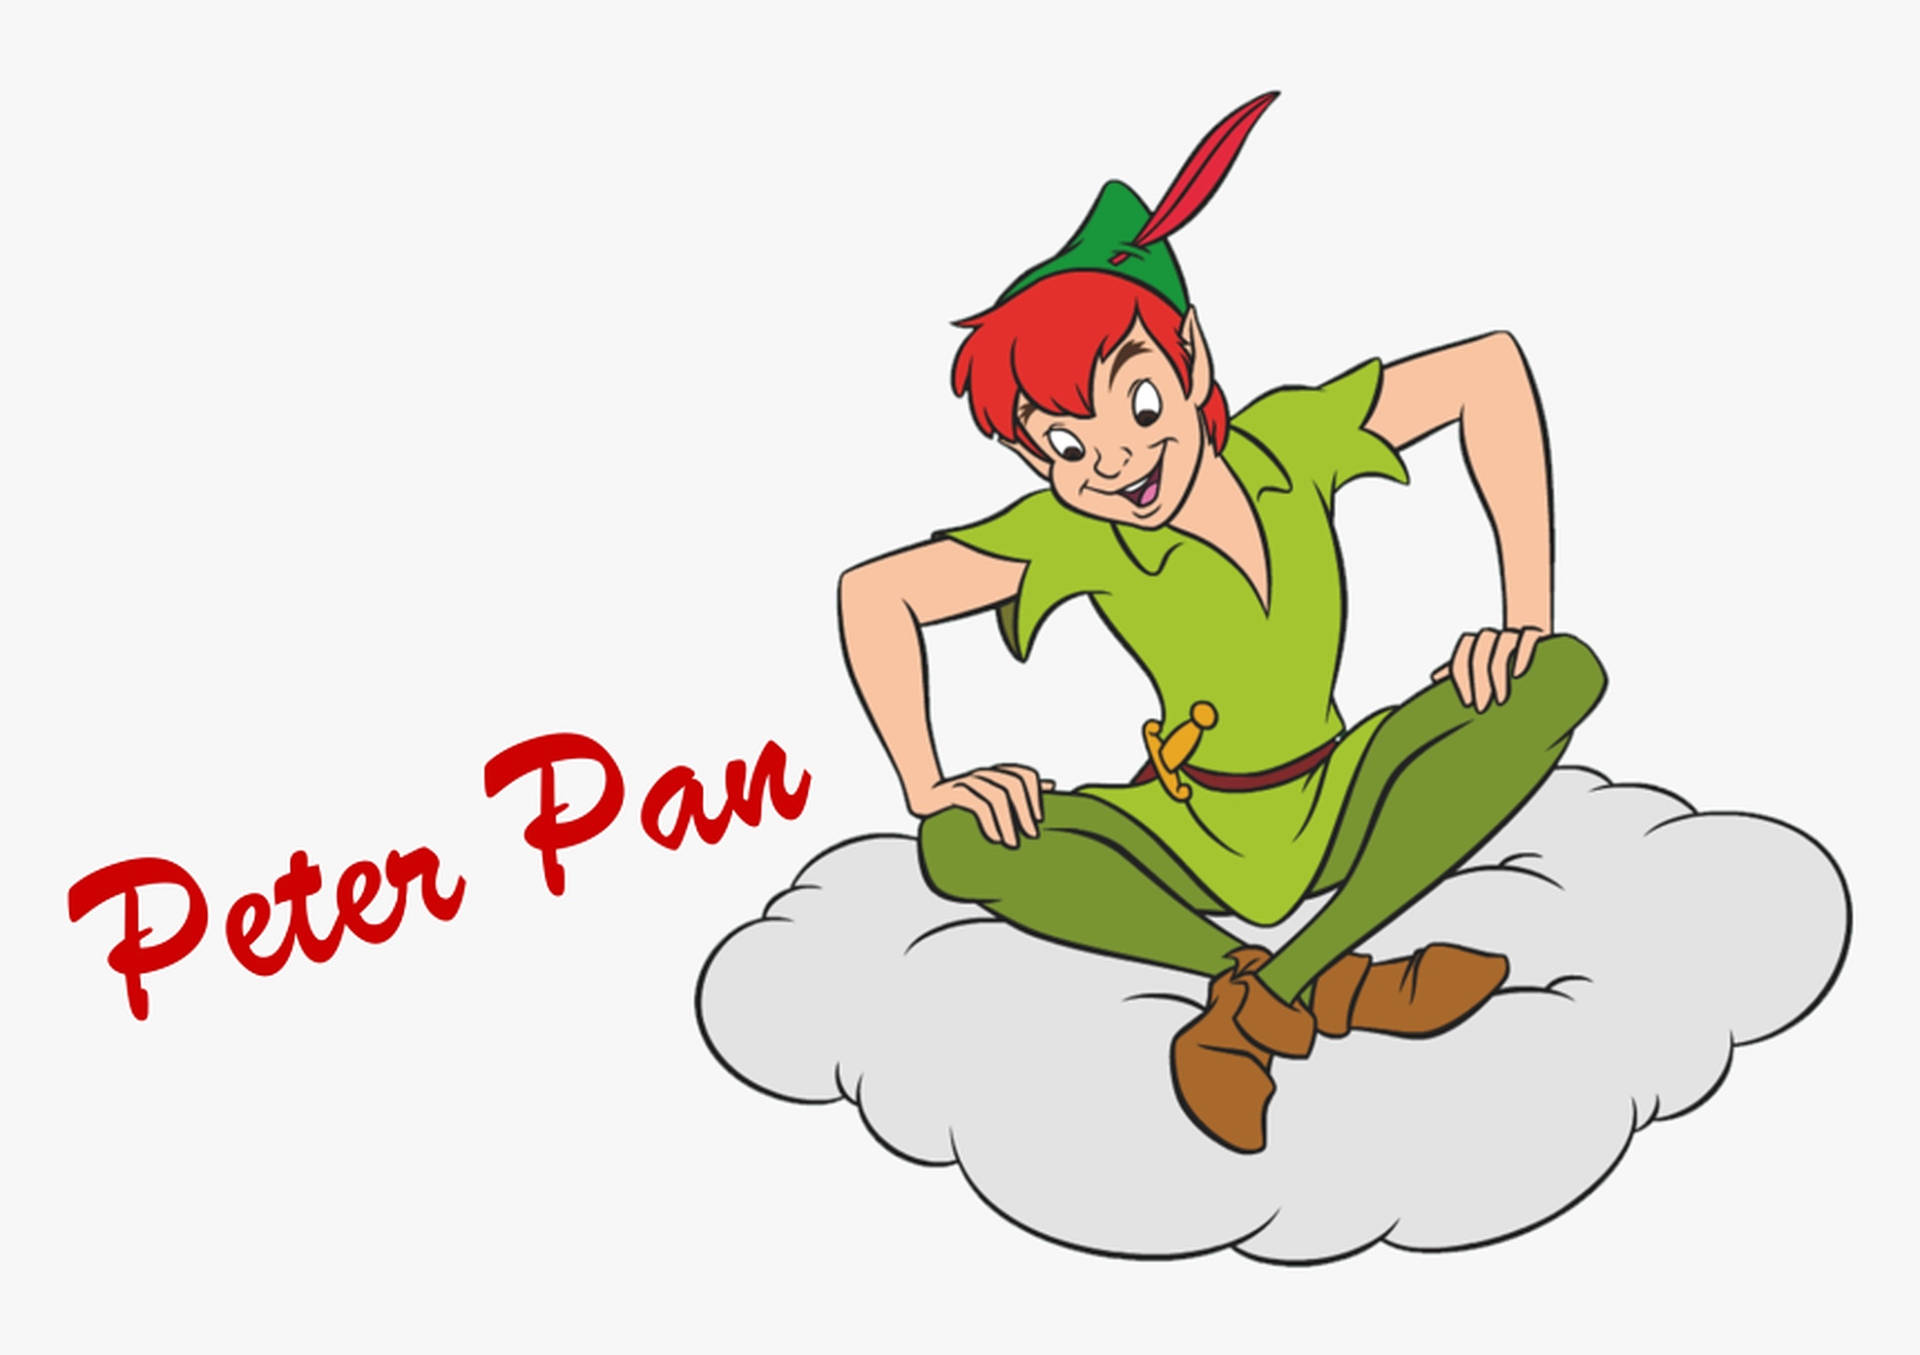 Peter Pan på Skyklud tegning: Lad Peter Pan flyve over en sky af tegneklud. Wallpaper